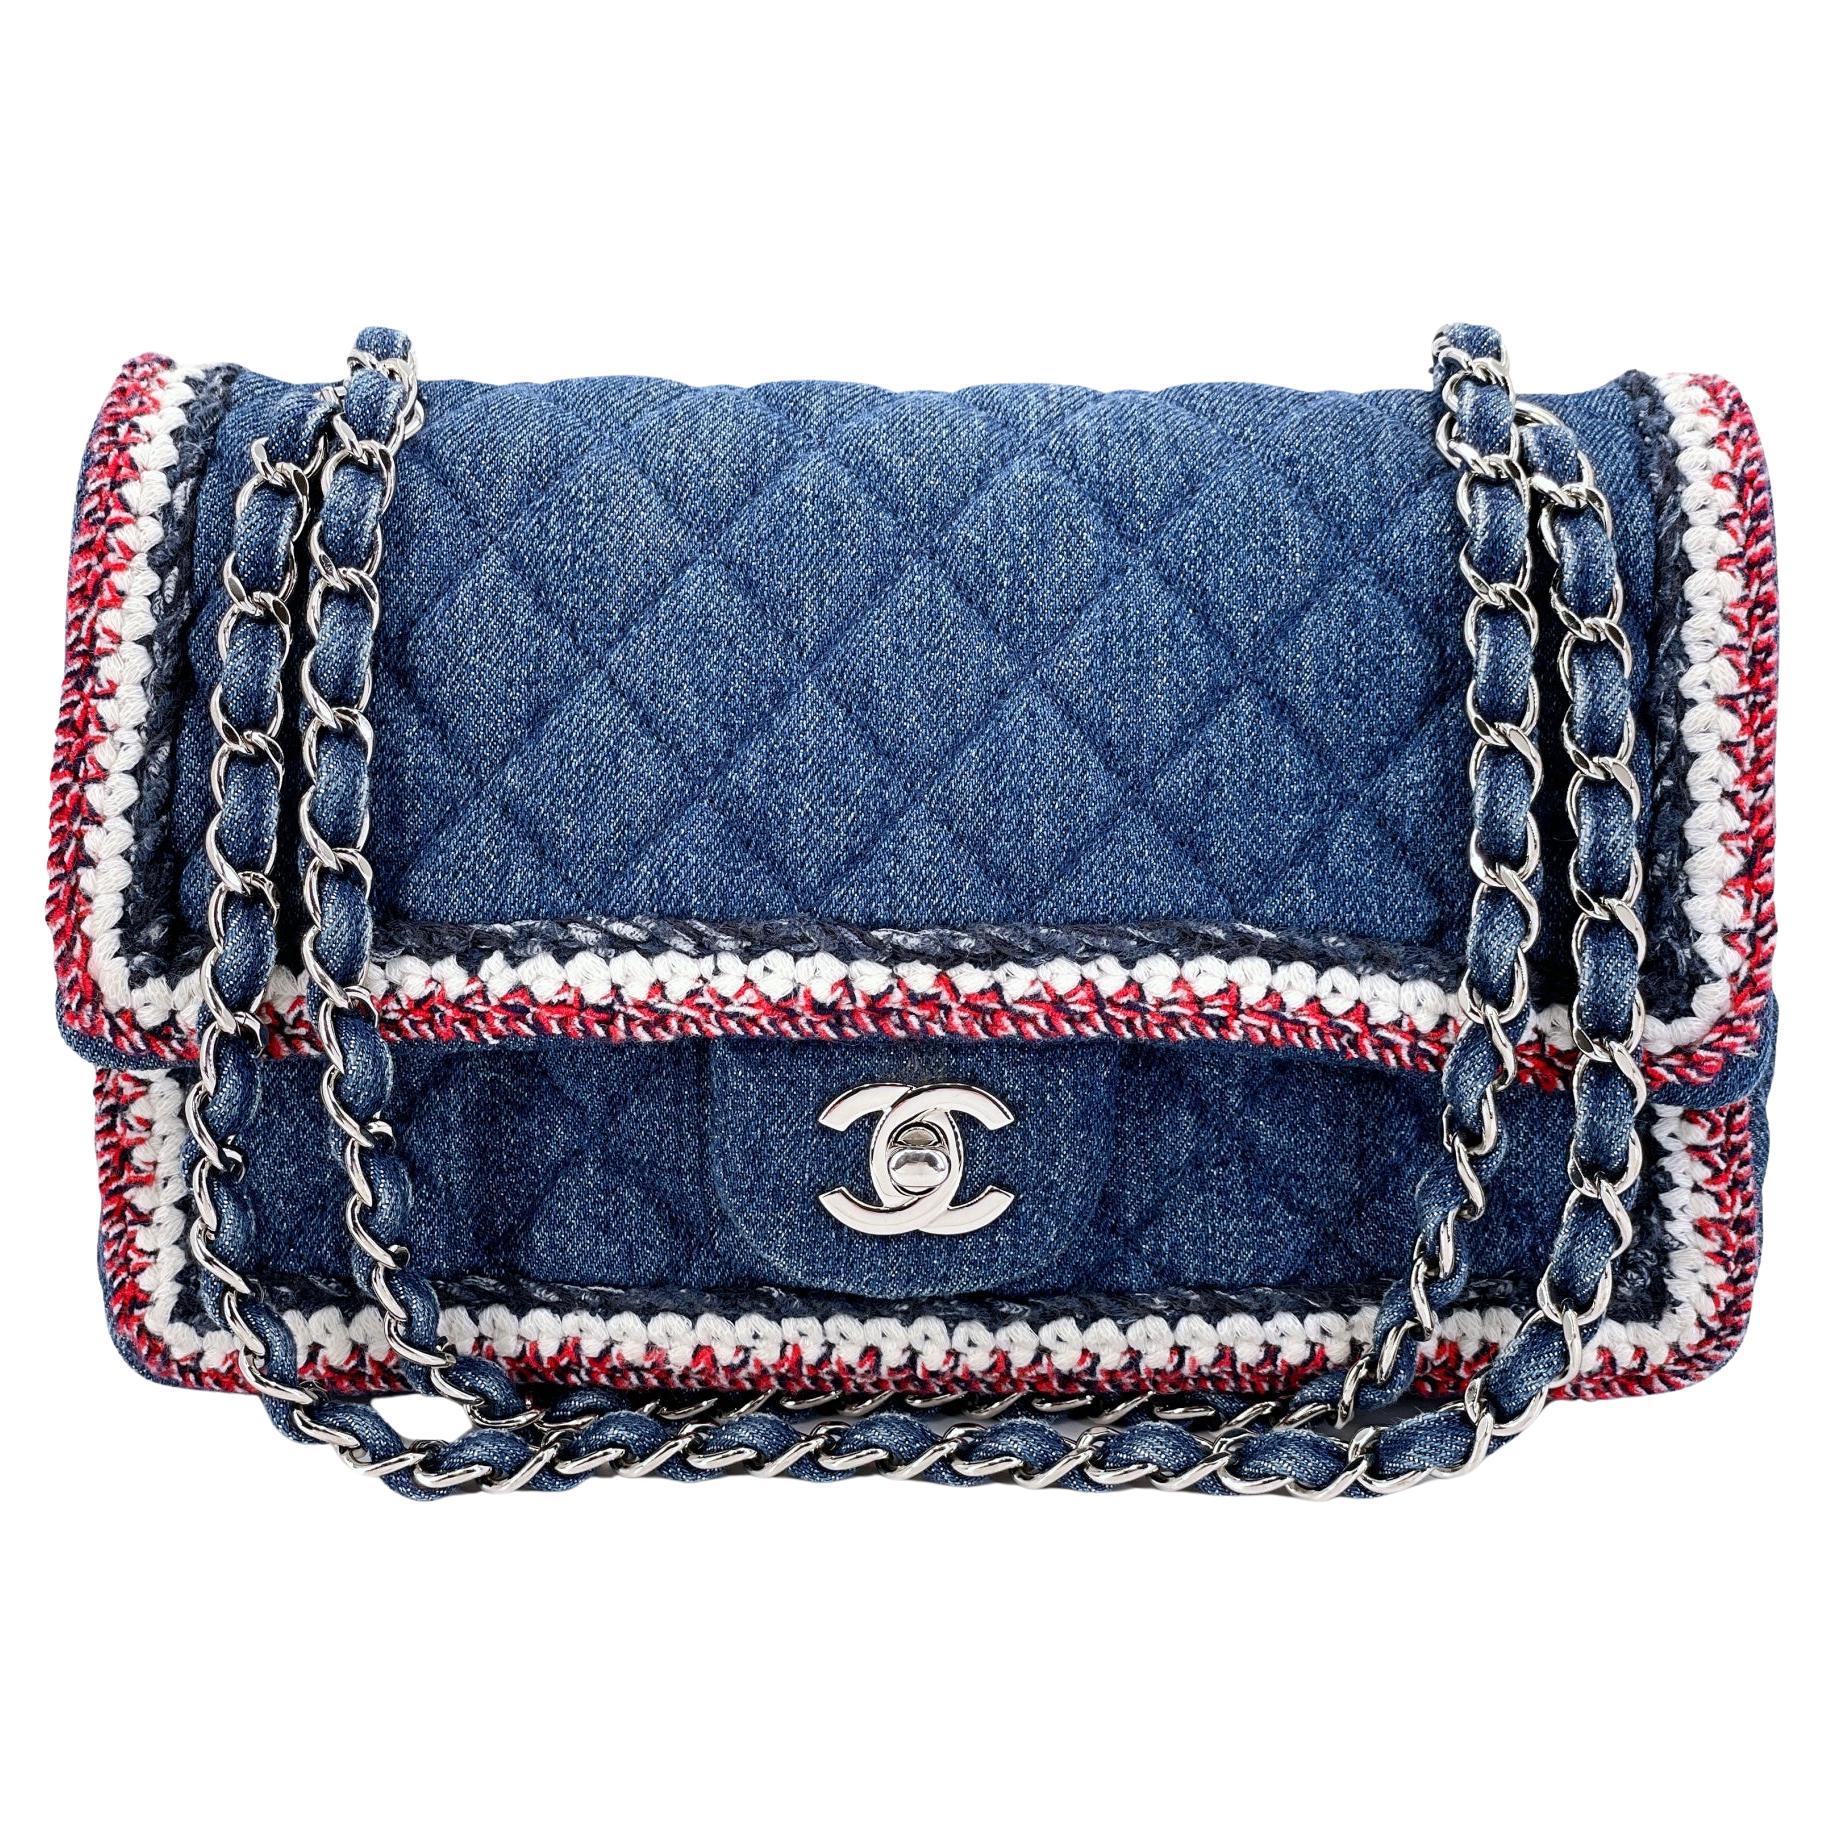 Chanel 2018 Framed Denim Medium Classic Flap Bag SHW 67966 For Sale